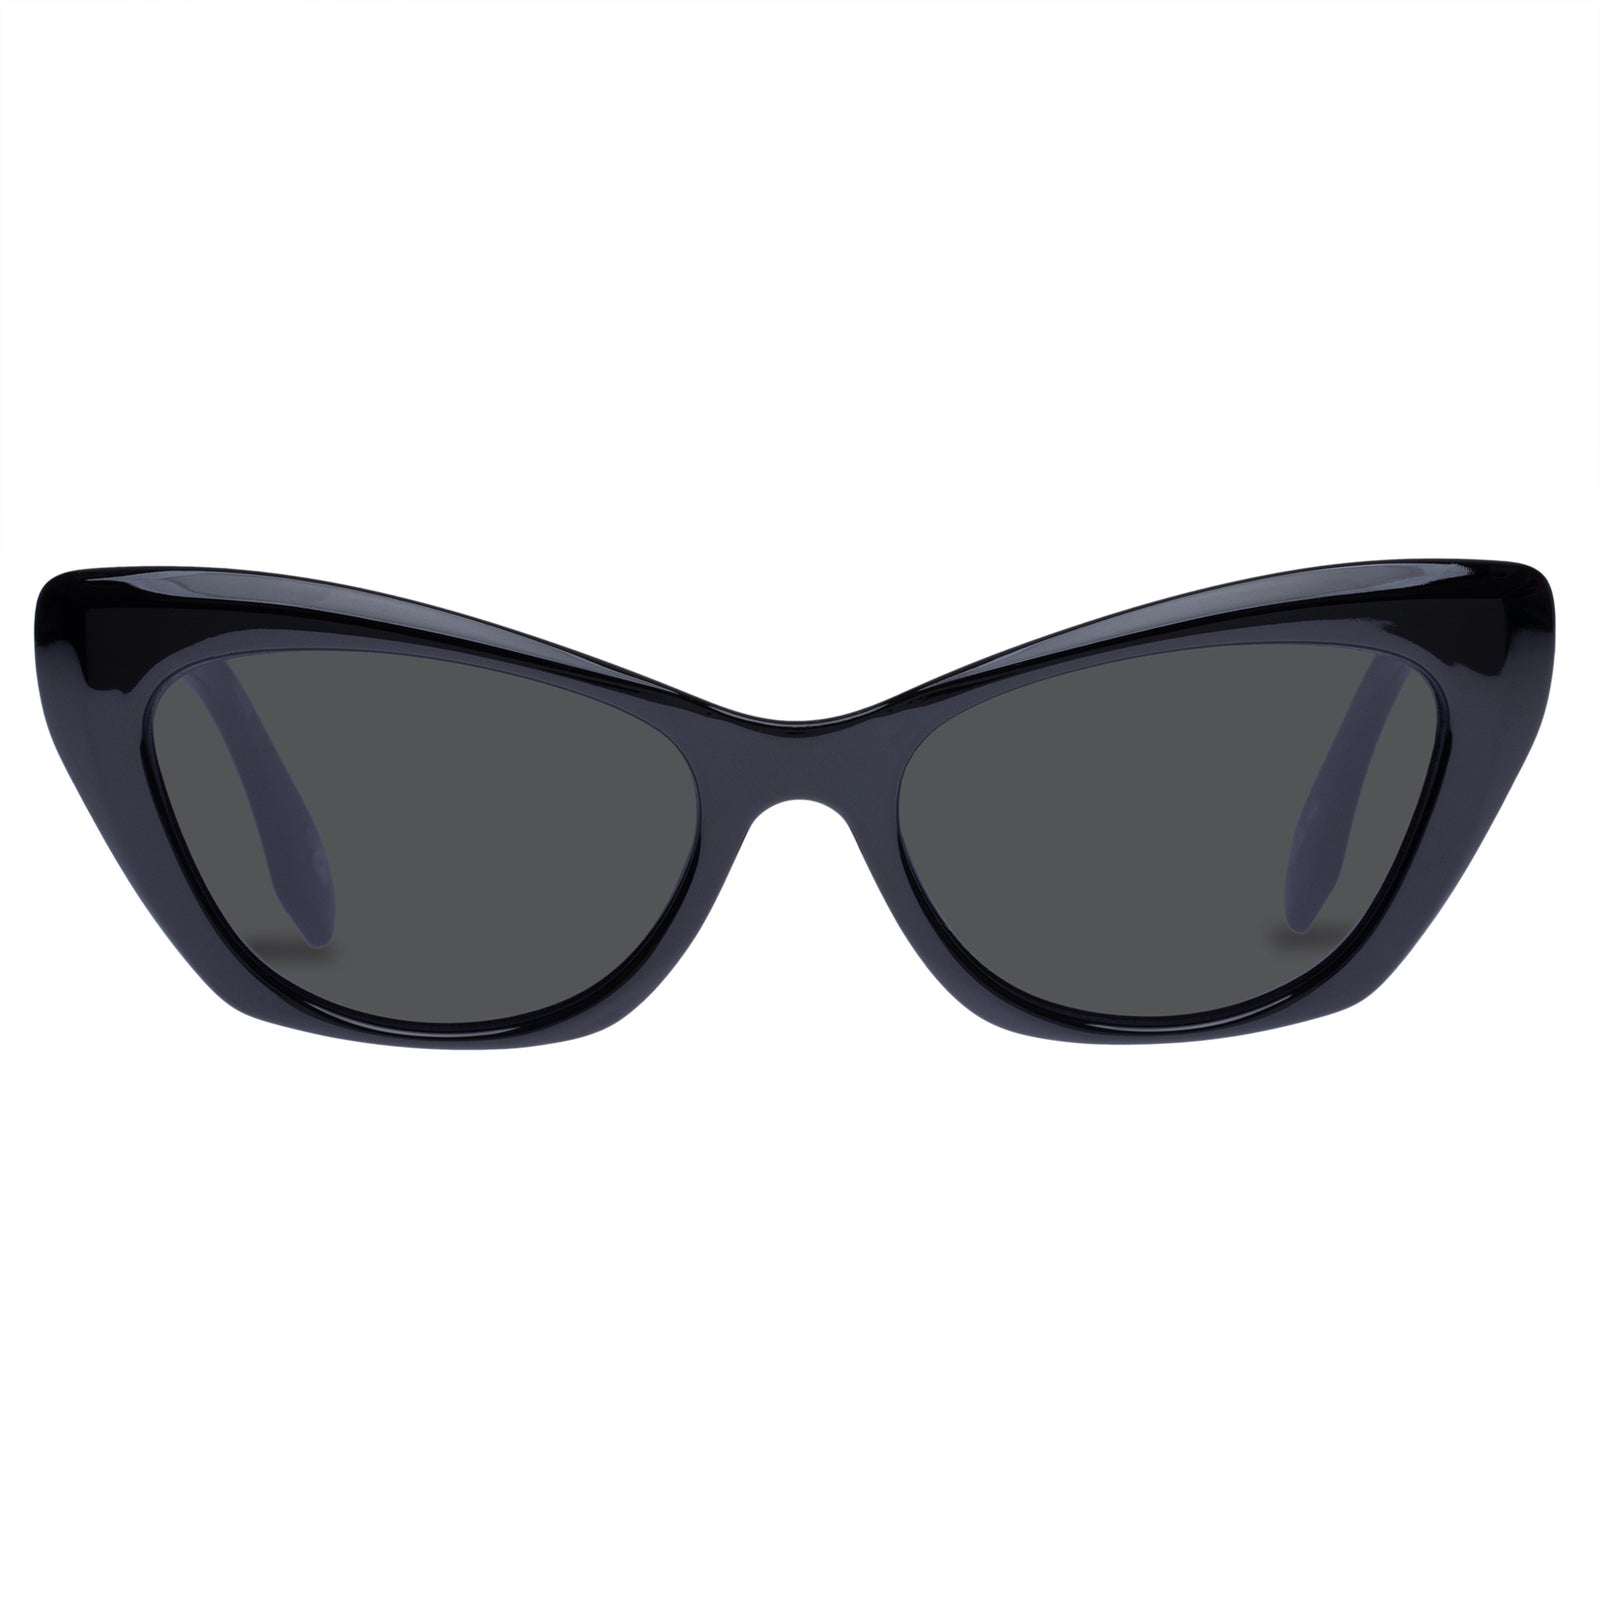 Hello Lover Oversized Square Cateye Sunglasses